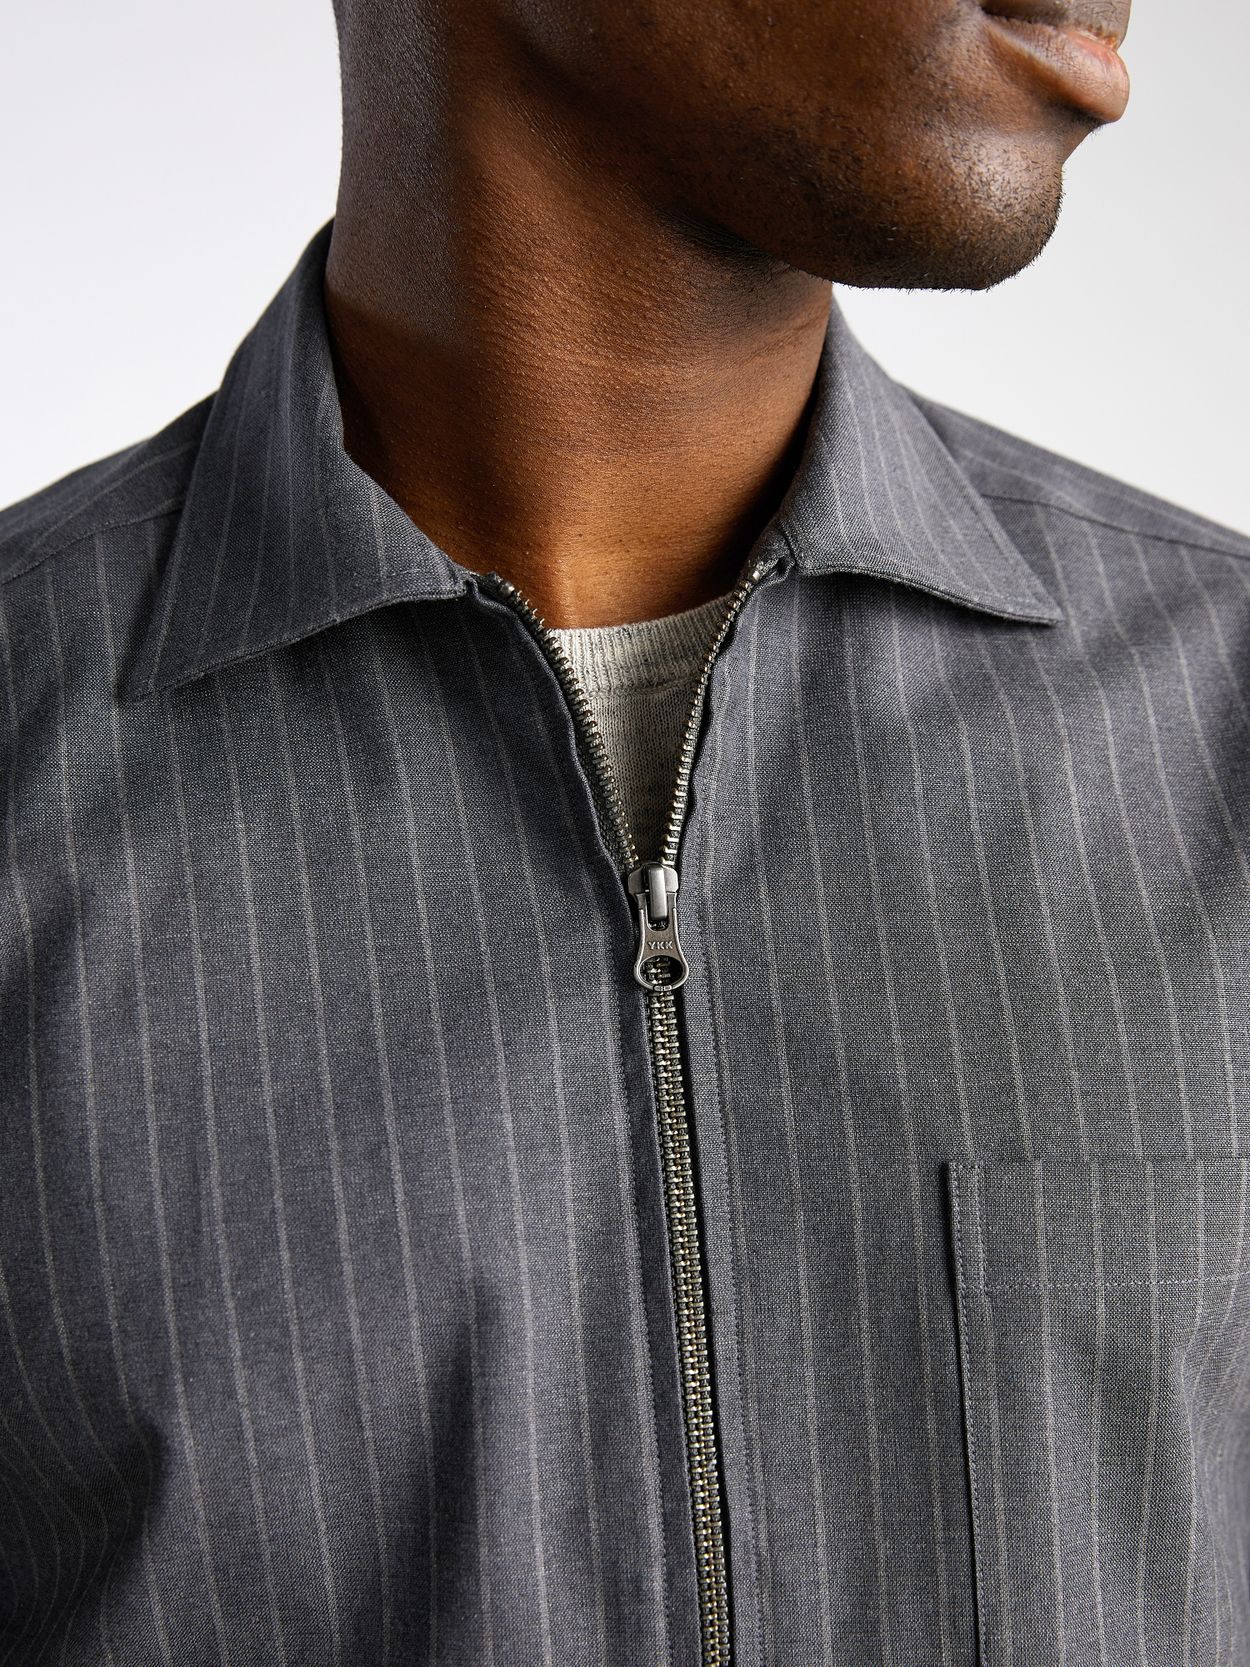 Grey Striped Zipper Shirt